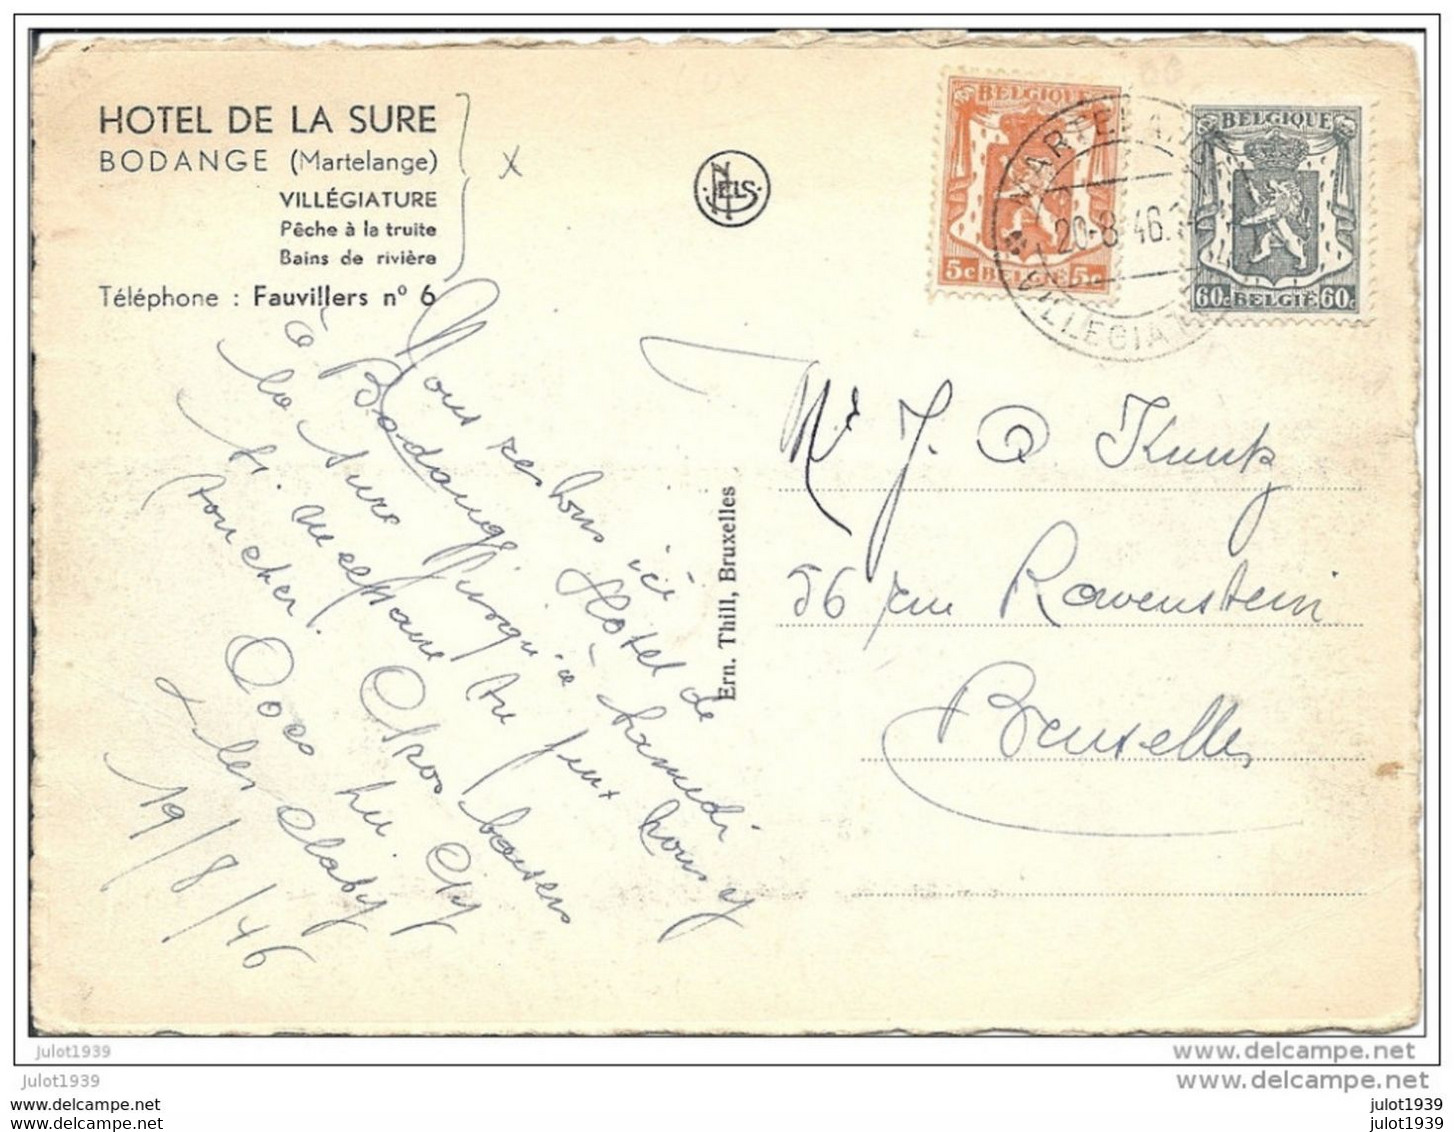 BODANGE ..-- Hôtel De La SURE . 1946 Vers BXL ( Mr J. KNUTZ ) . Voir Verso . - Fauvillers